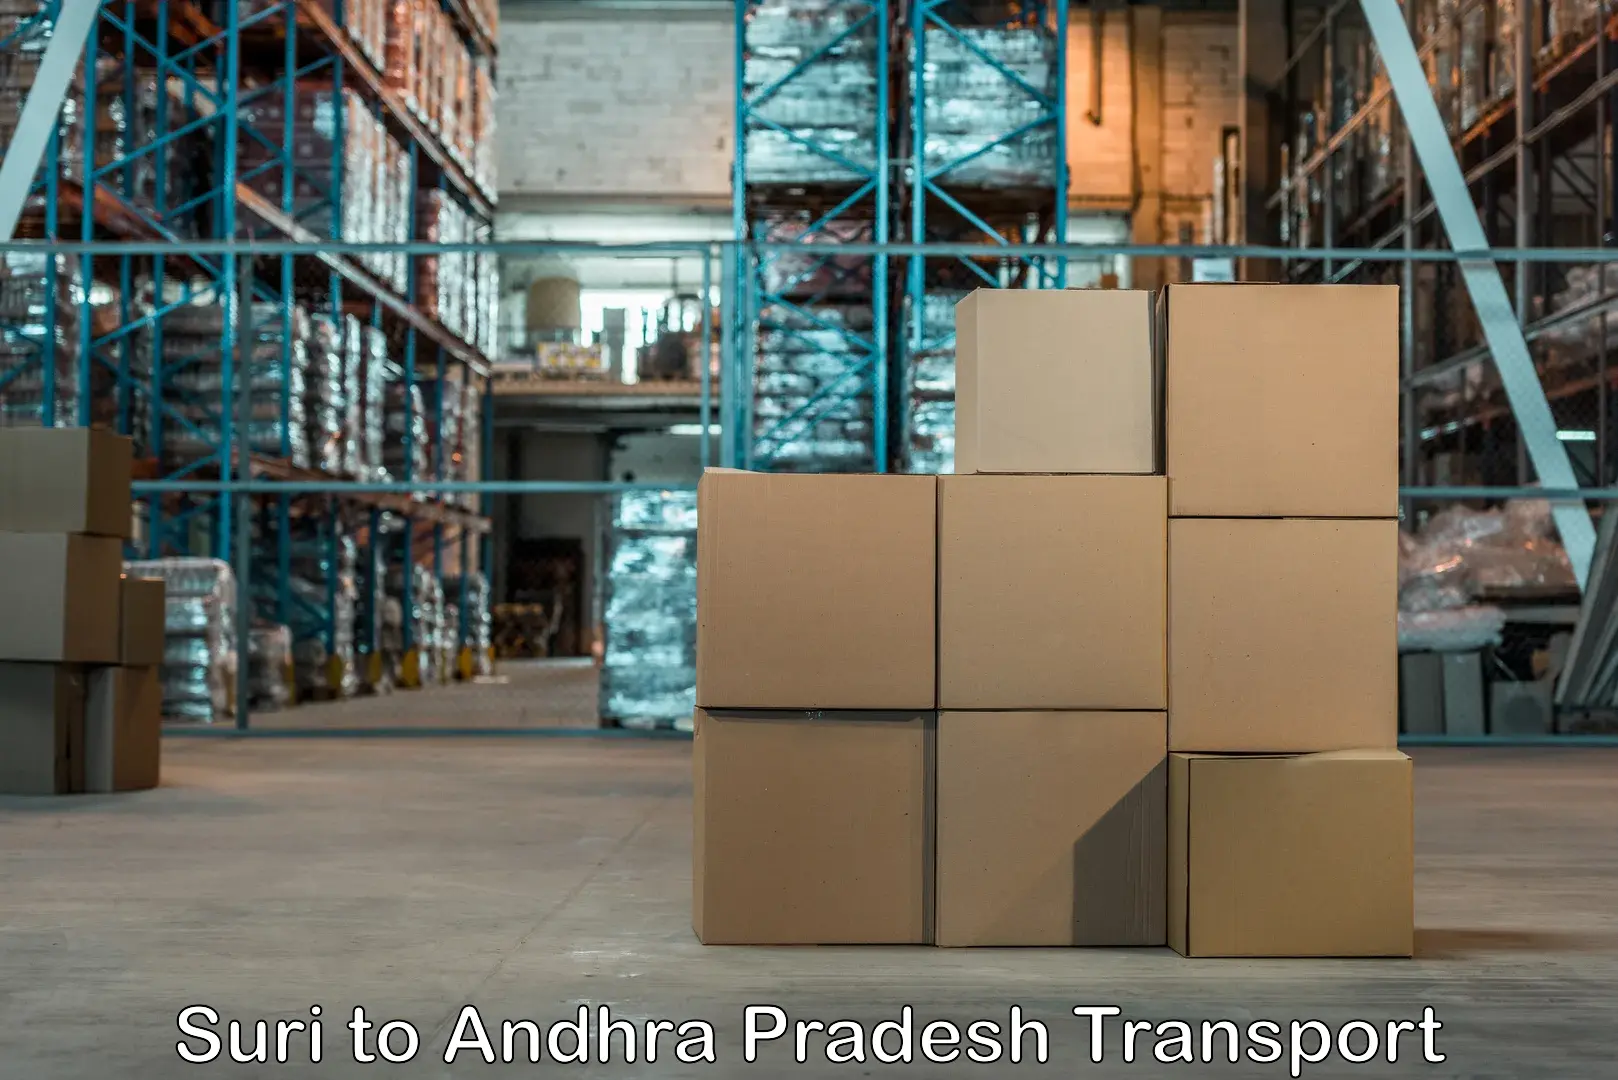 Bike shipping service Suri to Andhra Pradesh